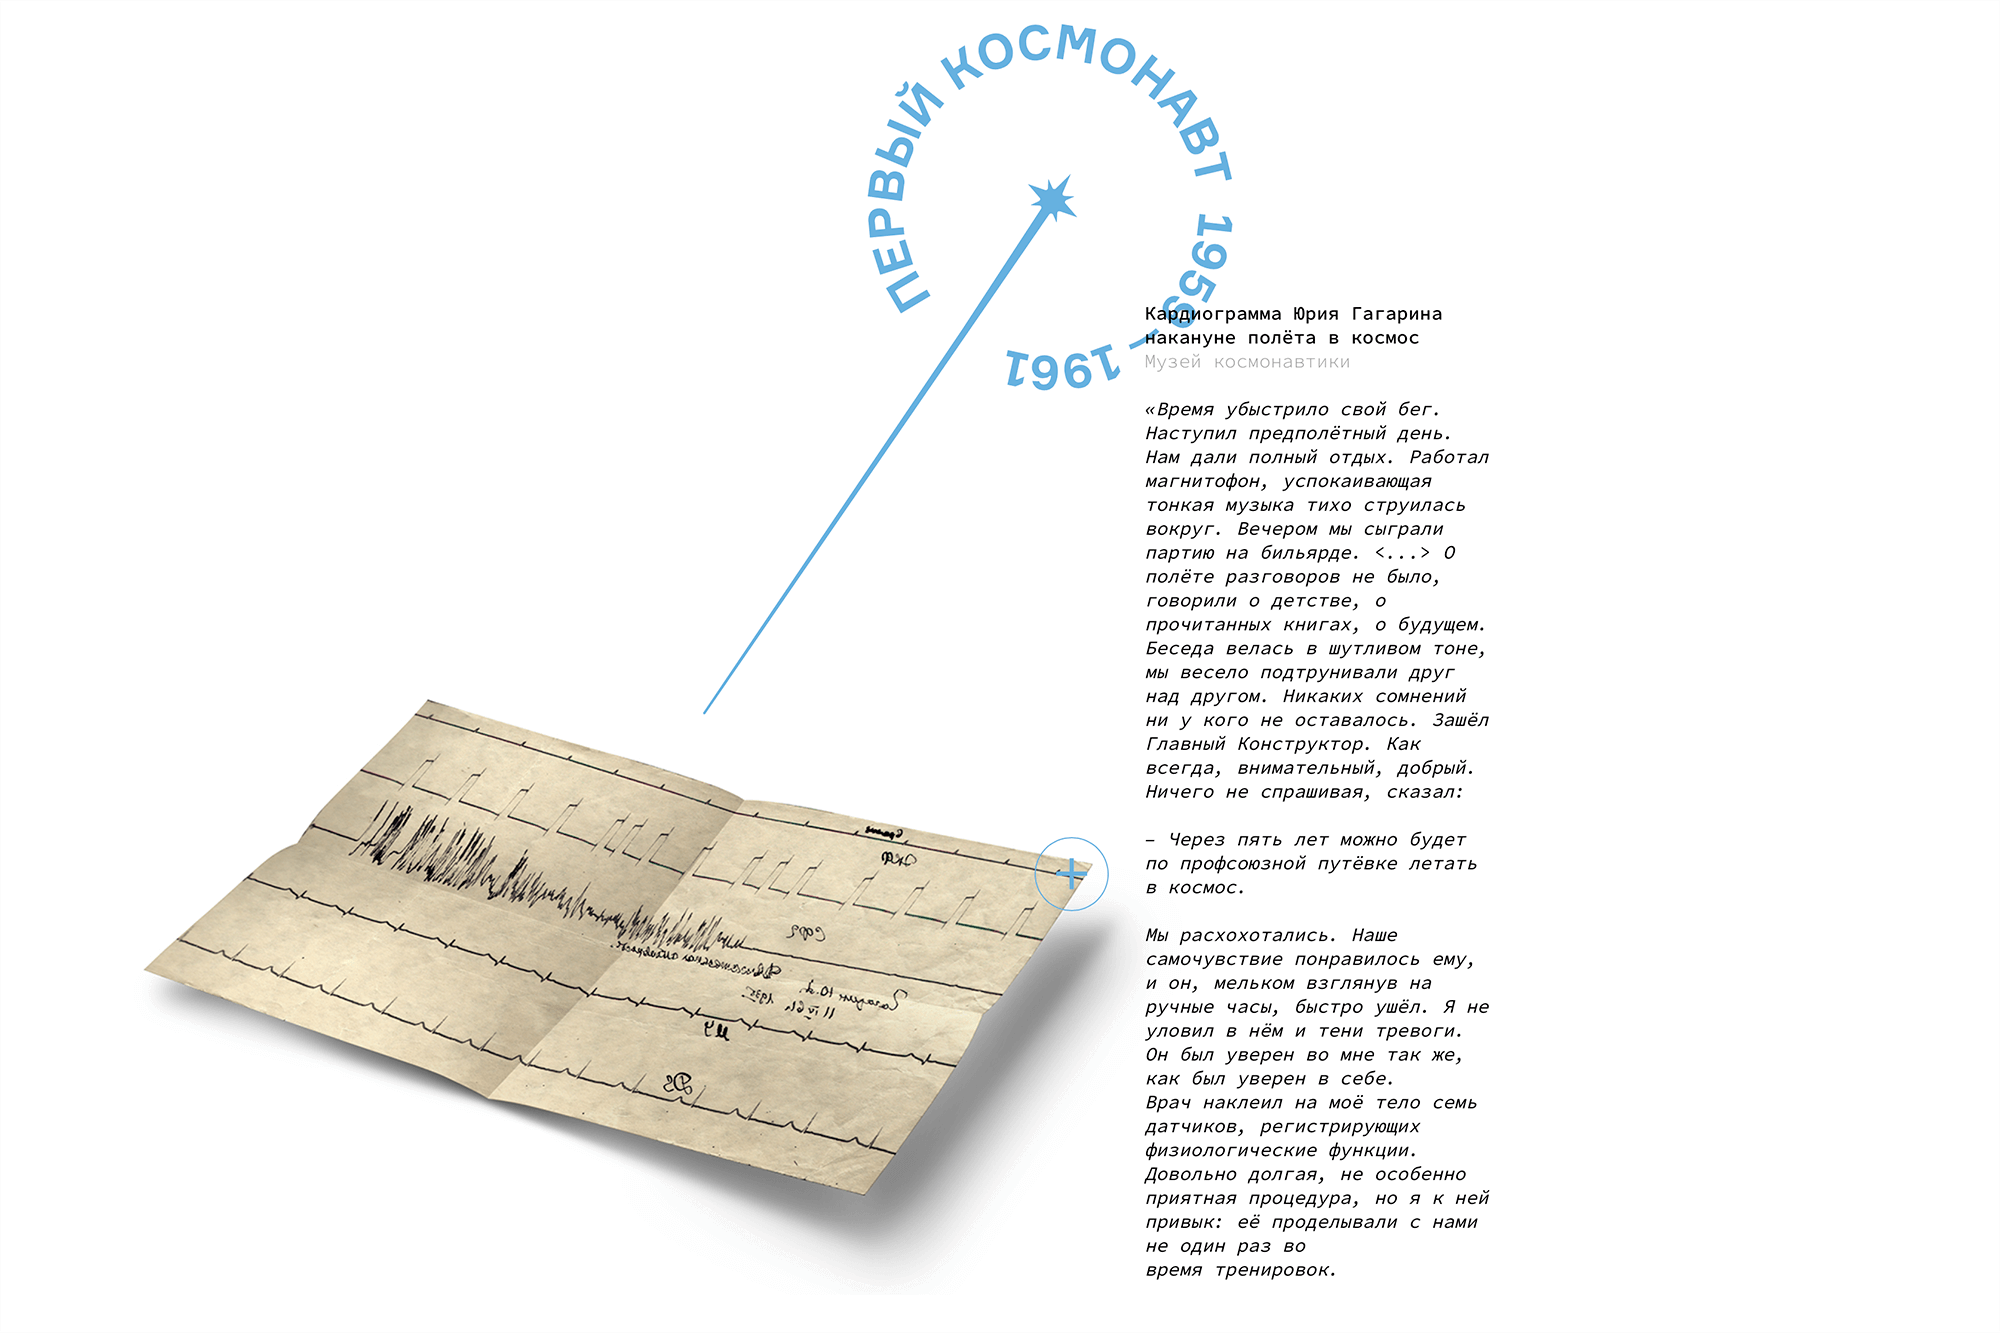 Кардиограмма Гагарина перед первым полетом